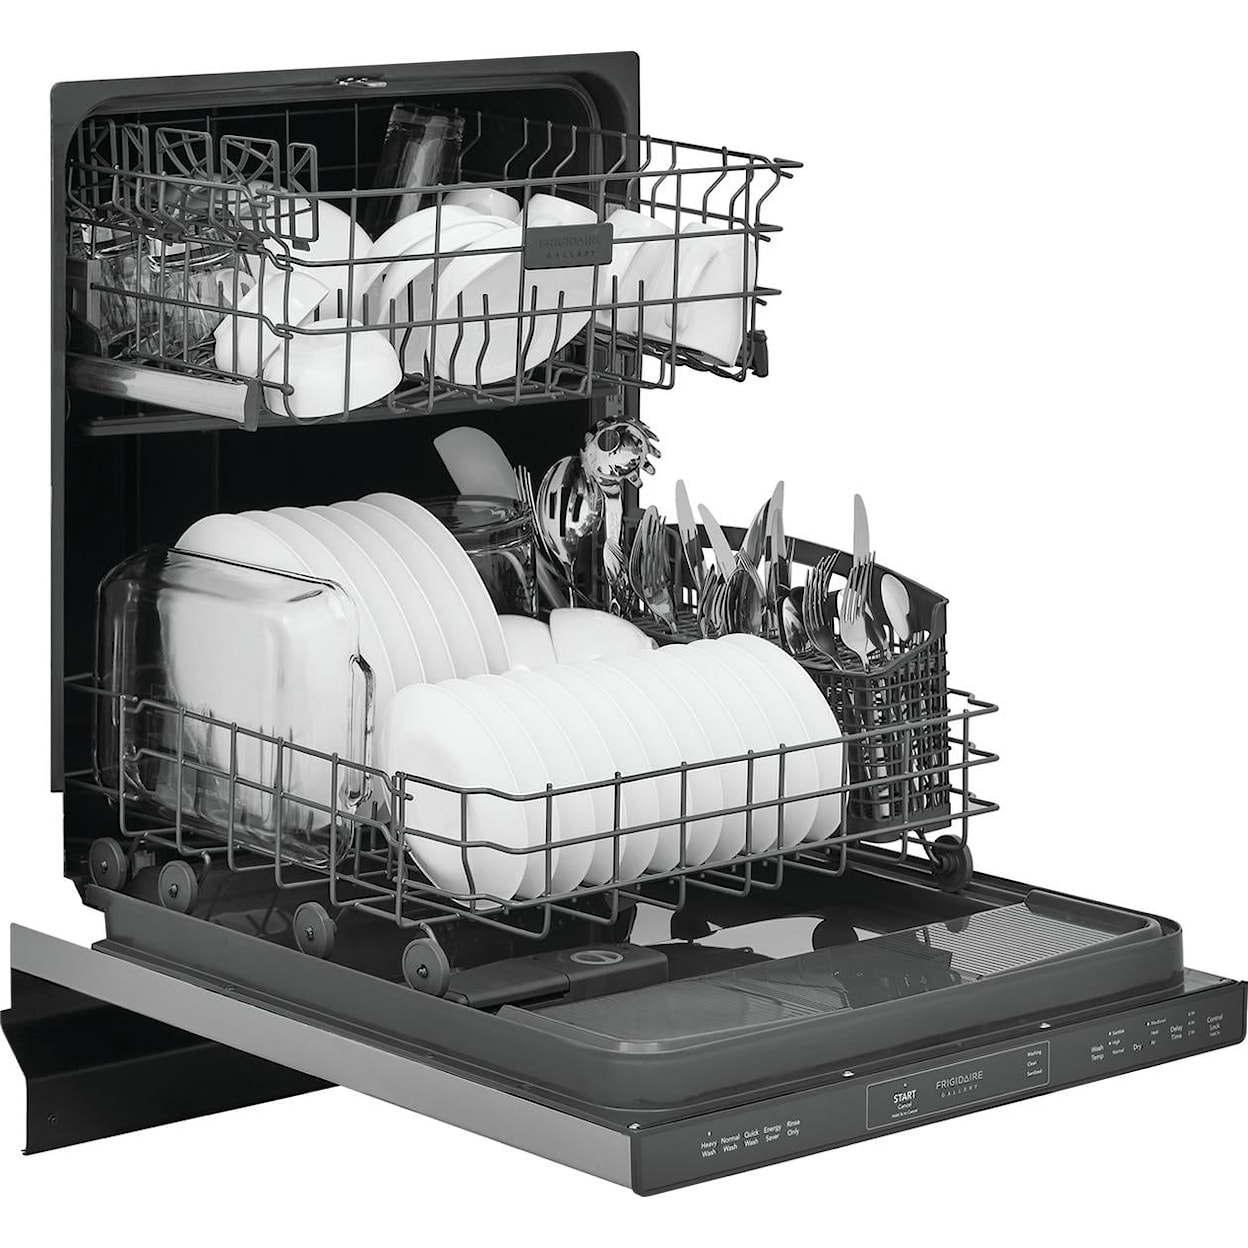 Frigidaire Dishwashers Built In Fullsize Dishwasher